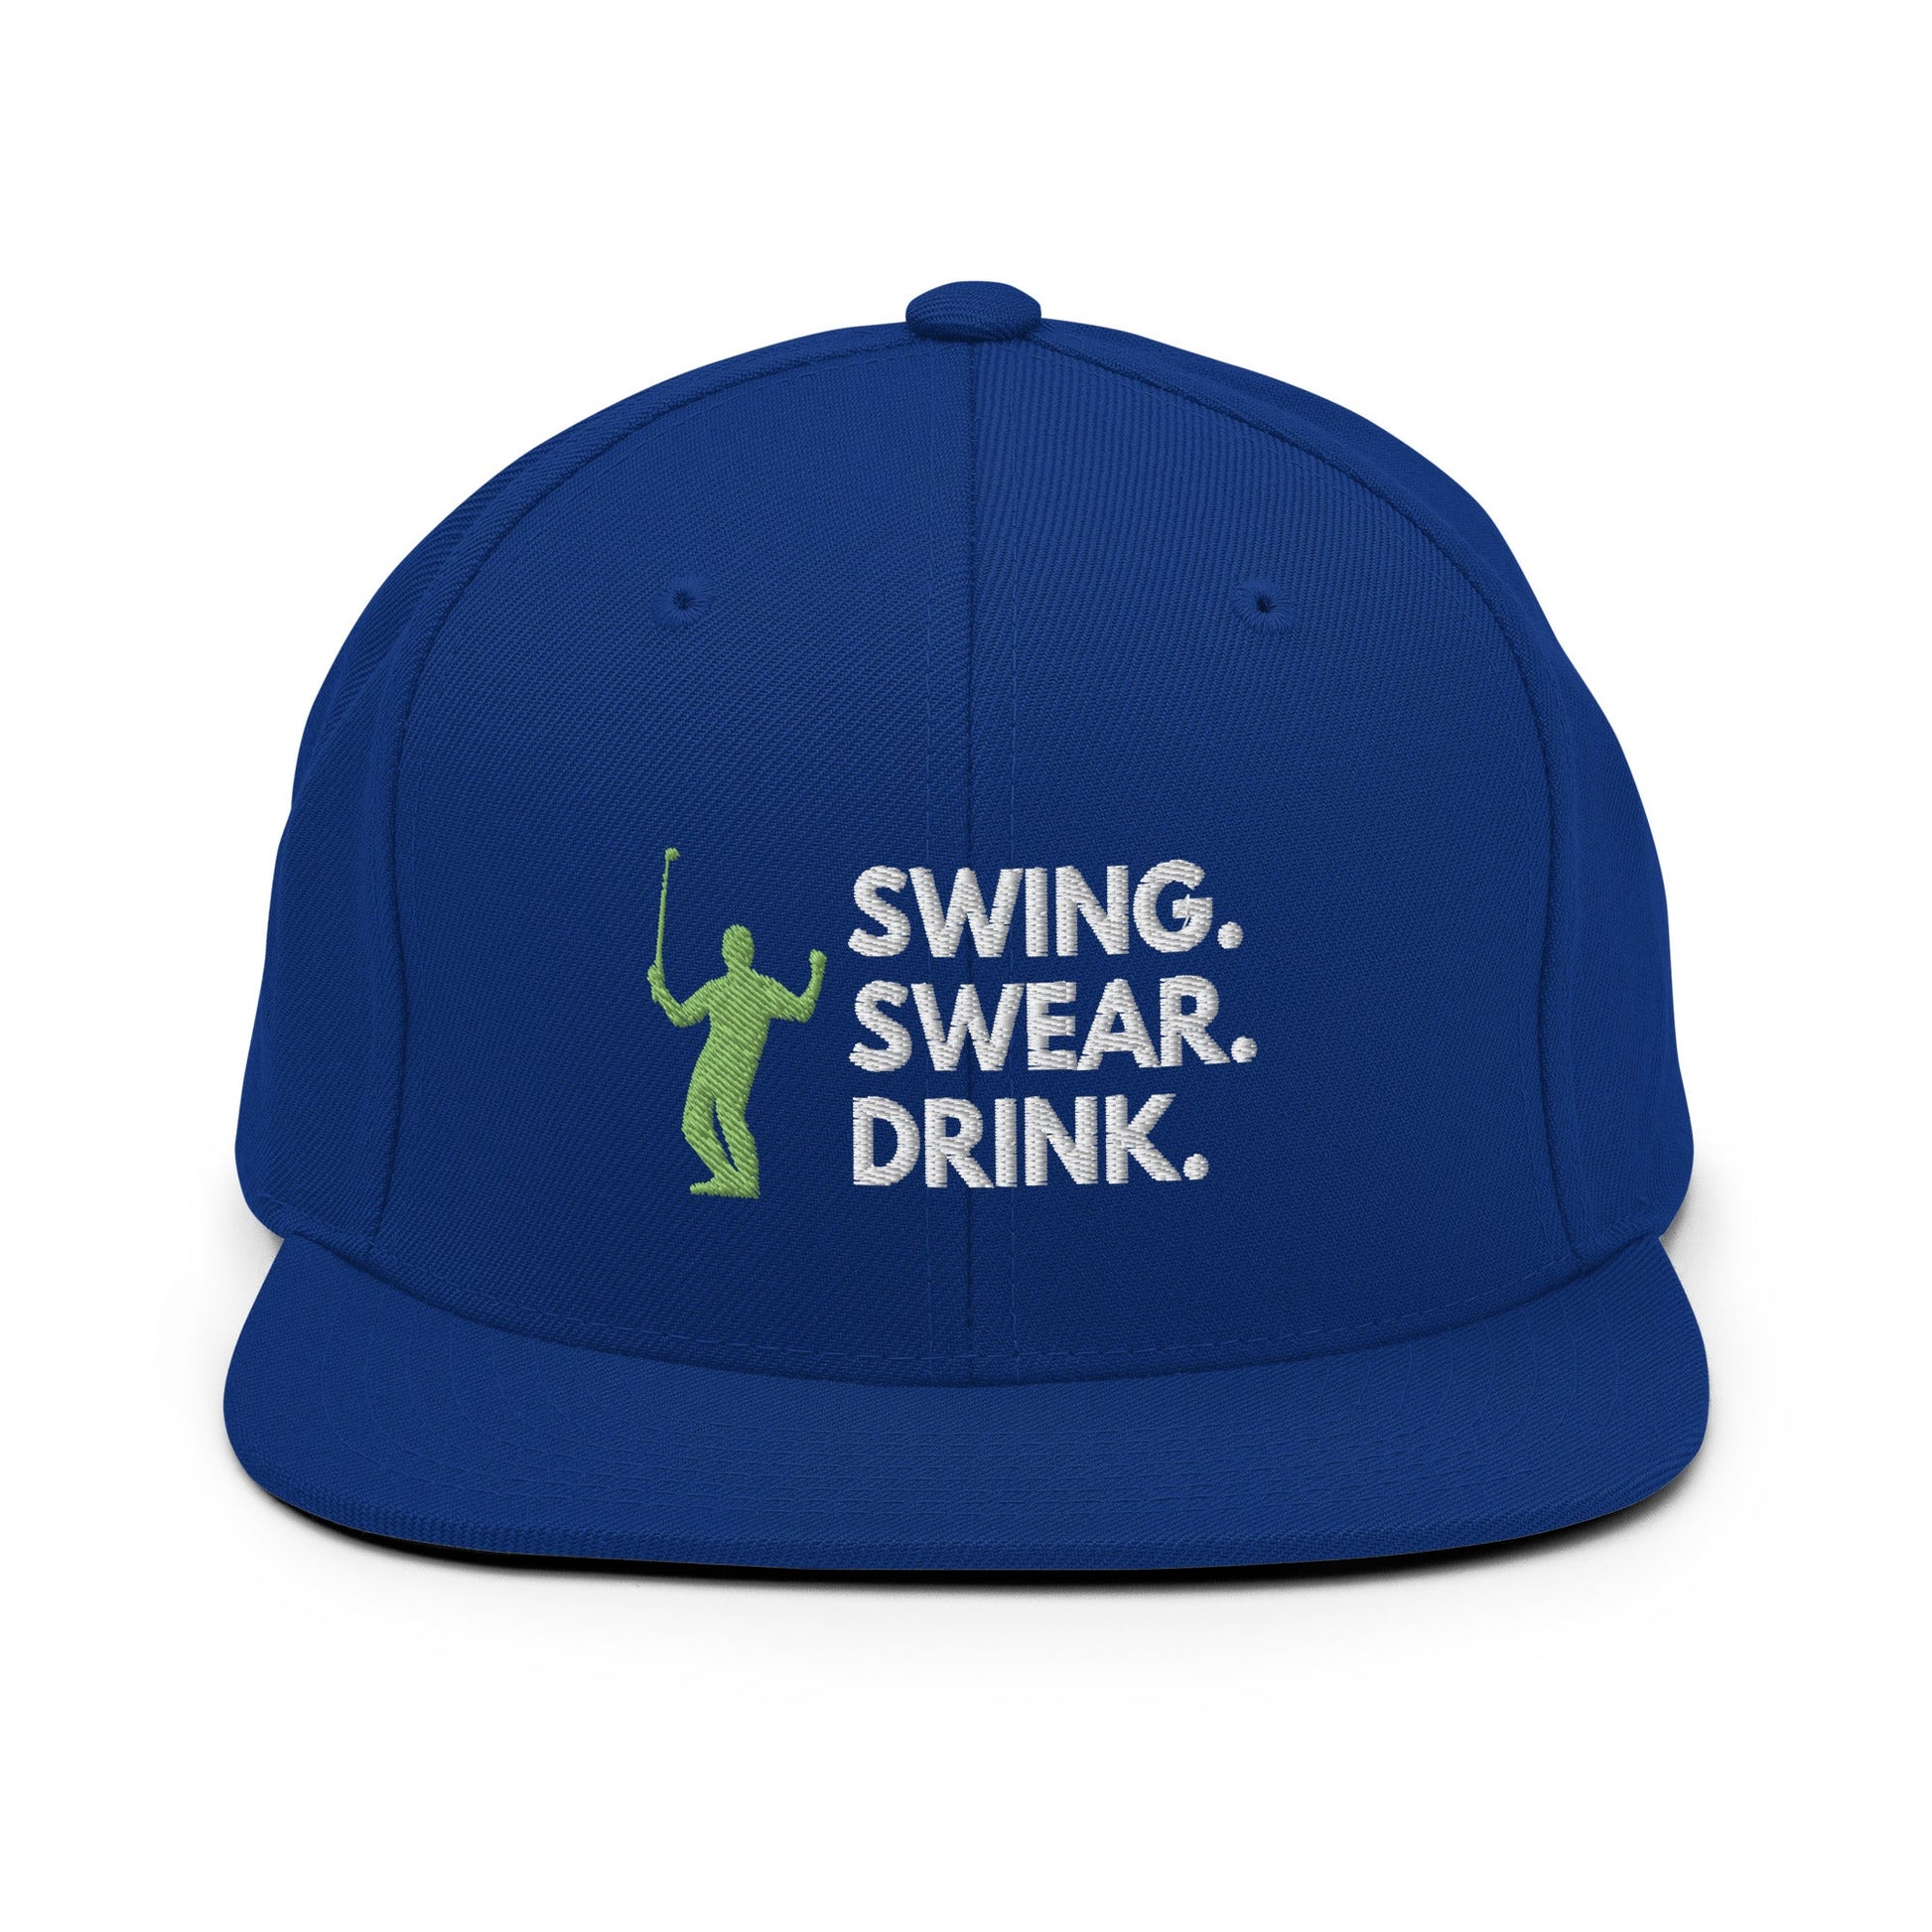 Funny Golfer Gifts  Snapback Hat Royal Blue Swing. Swear. Drink Snapback Hat